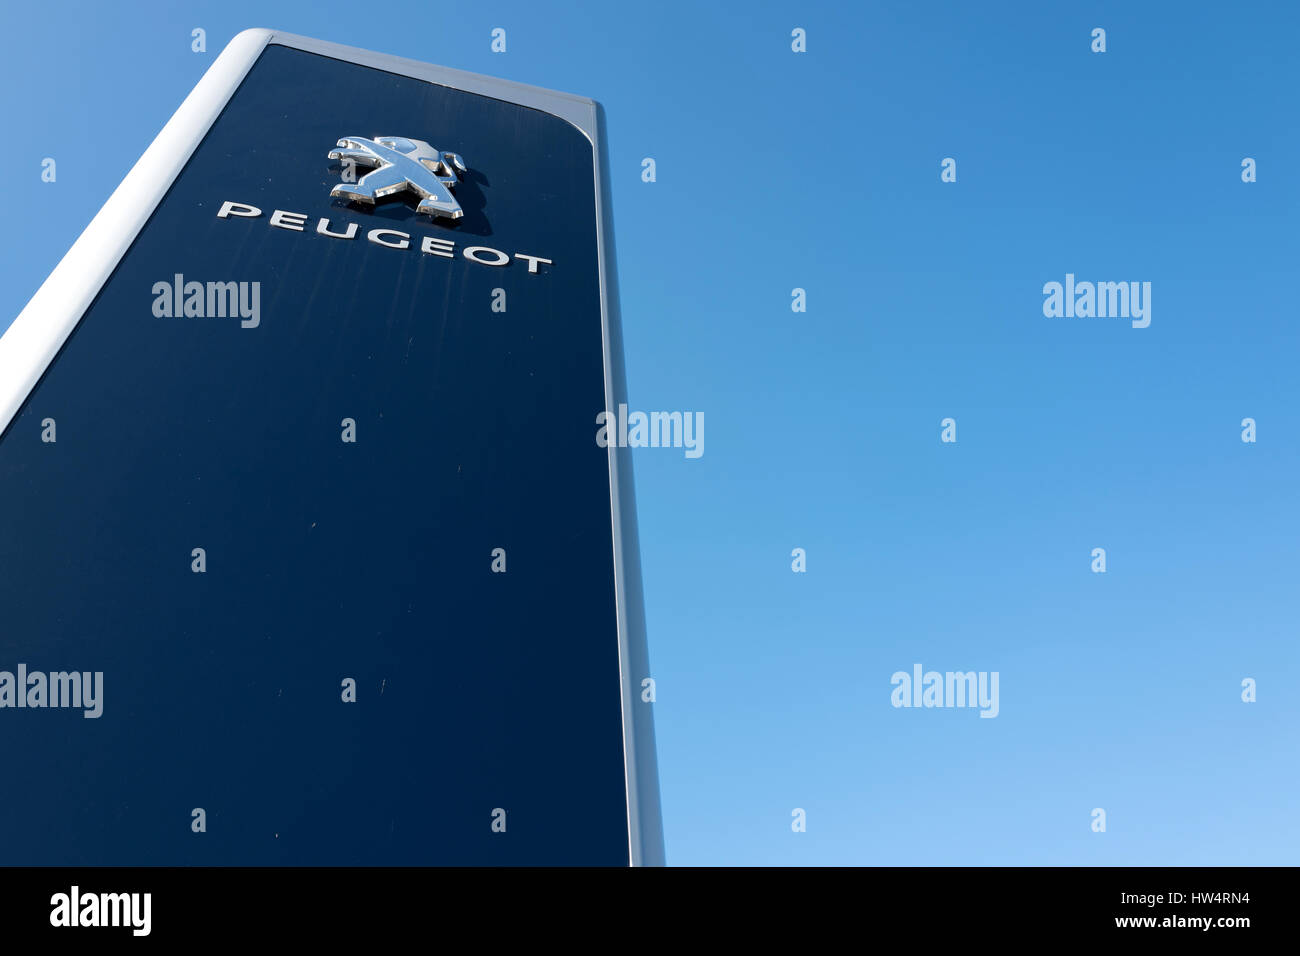 Peugeot Autohaus Zeichen gegen blauen Himmel Stockfoto